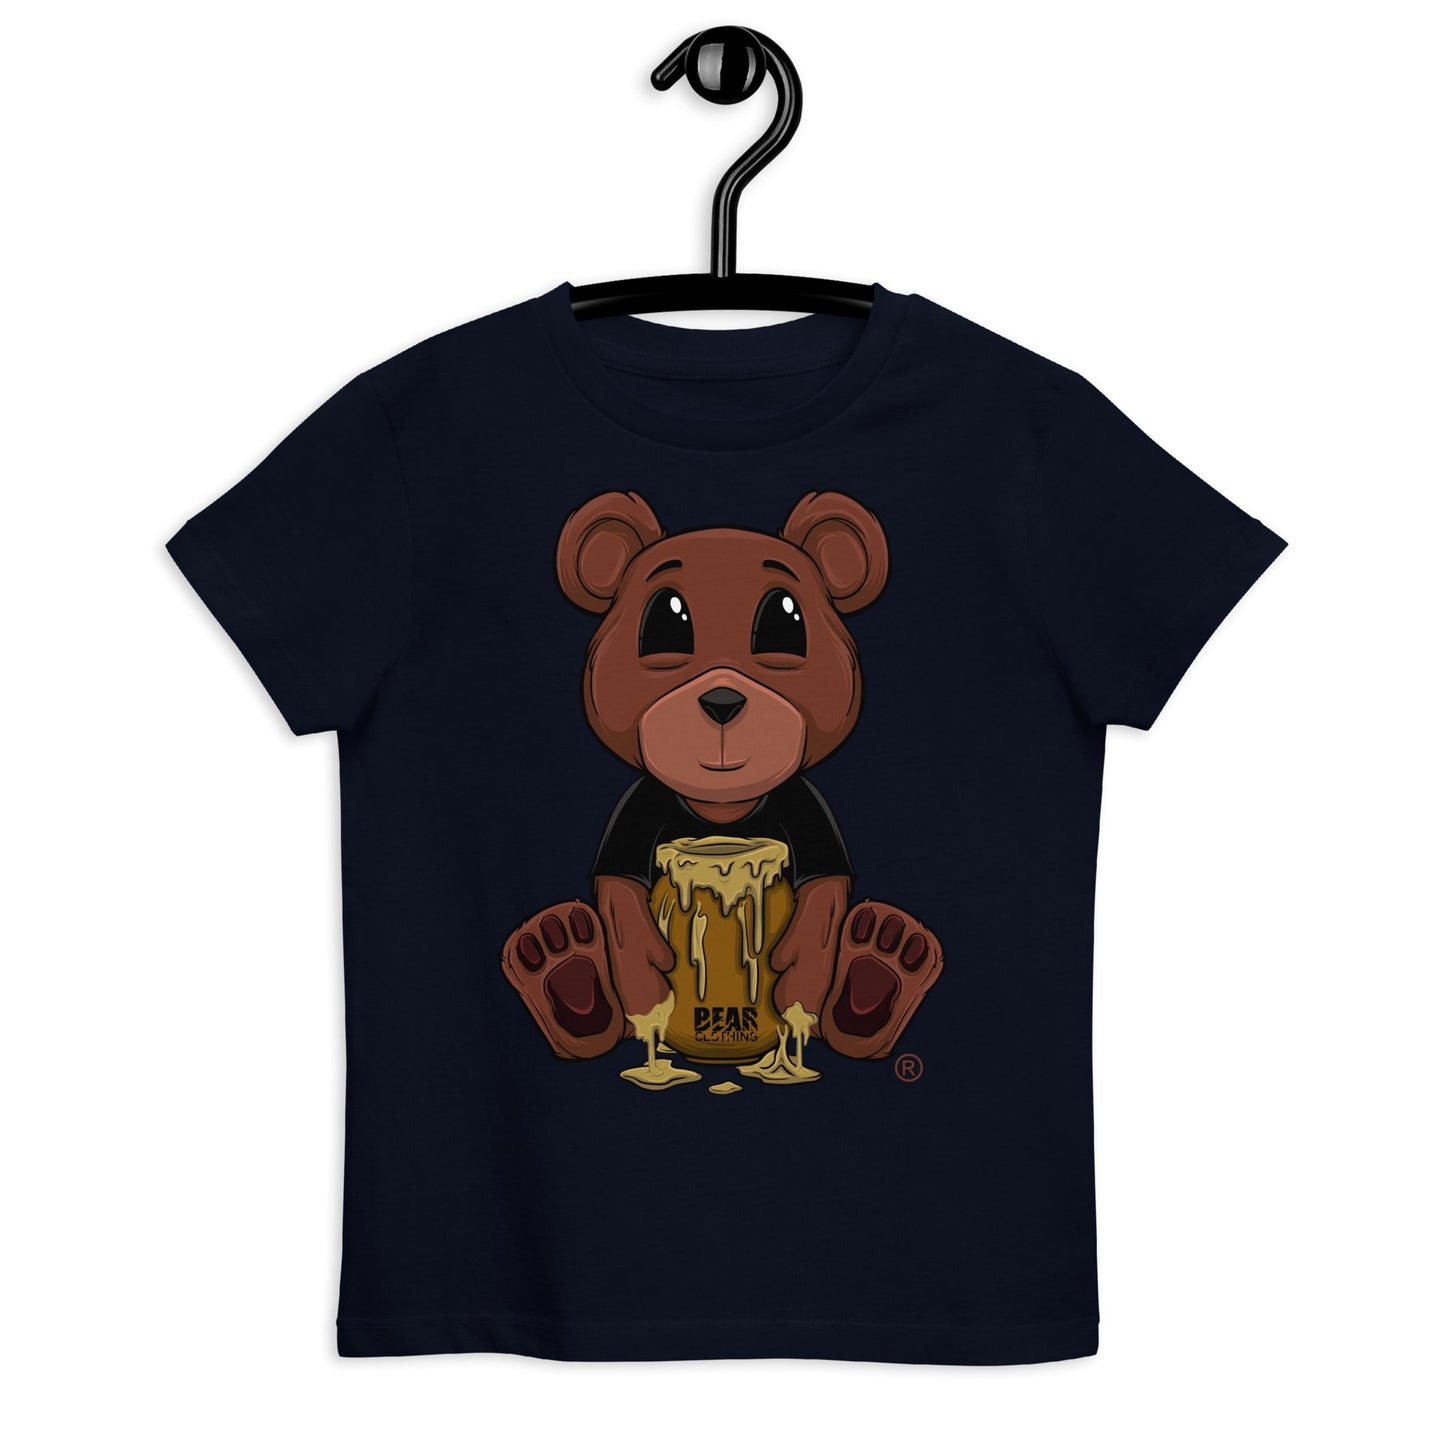 Honey Bear Organic Cotton Kids Tee - Bearclothing